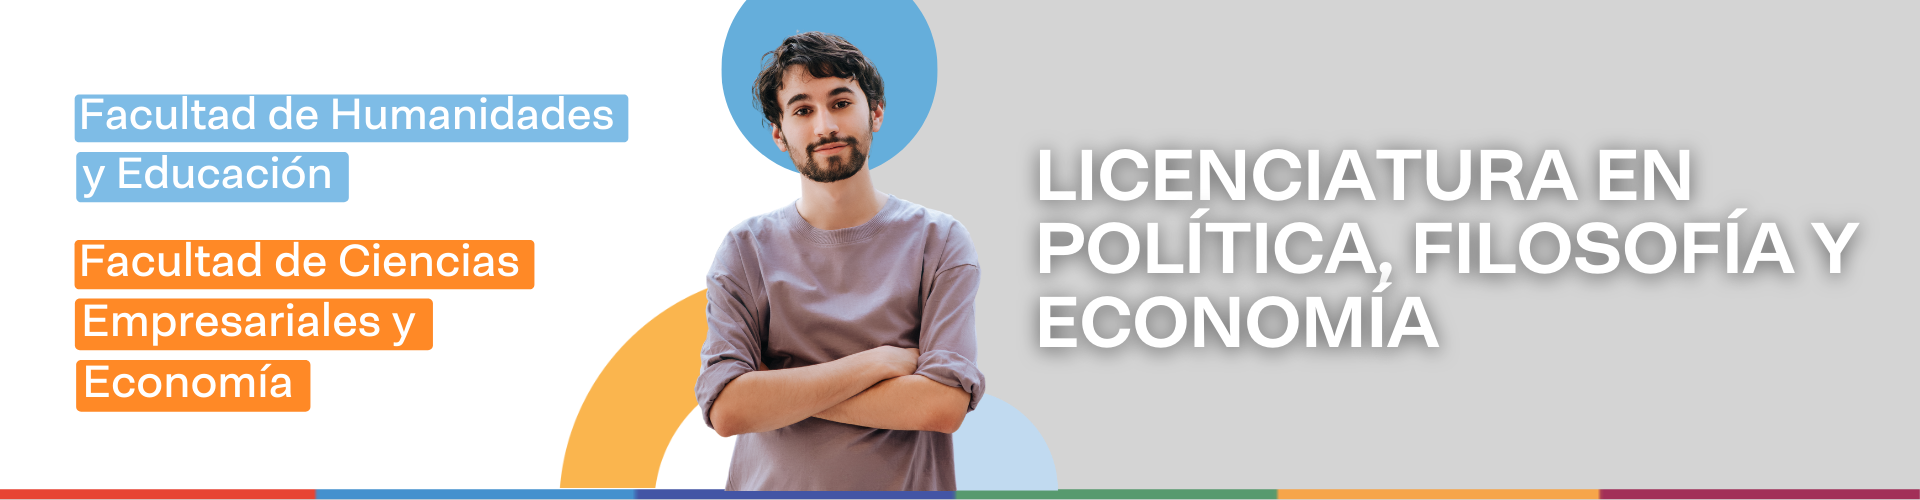 Licenciatura en Política, Filosofía y Economía | UM